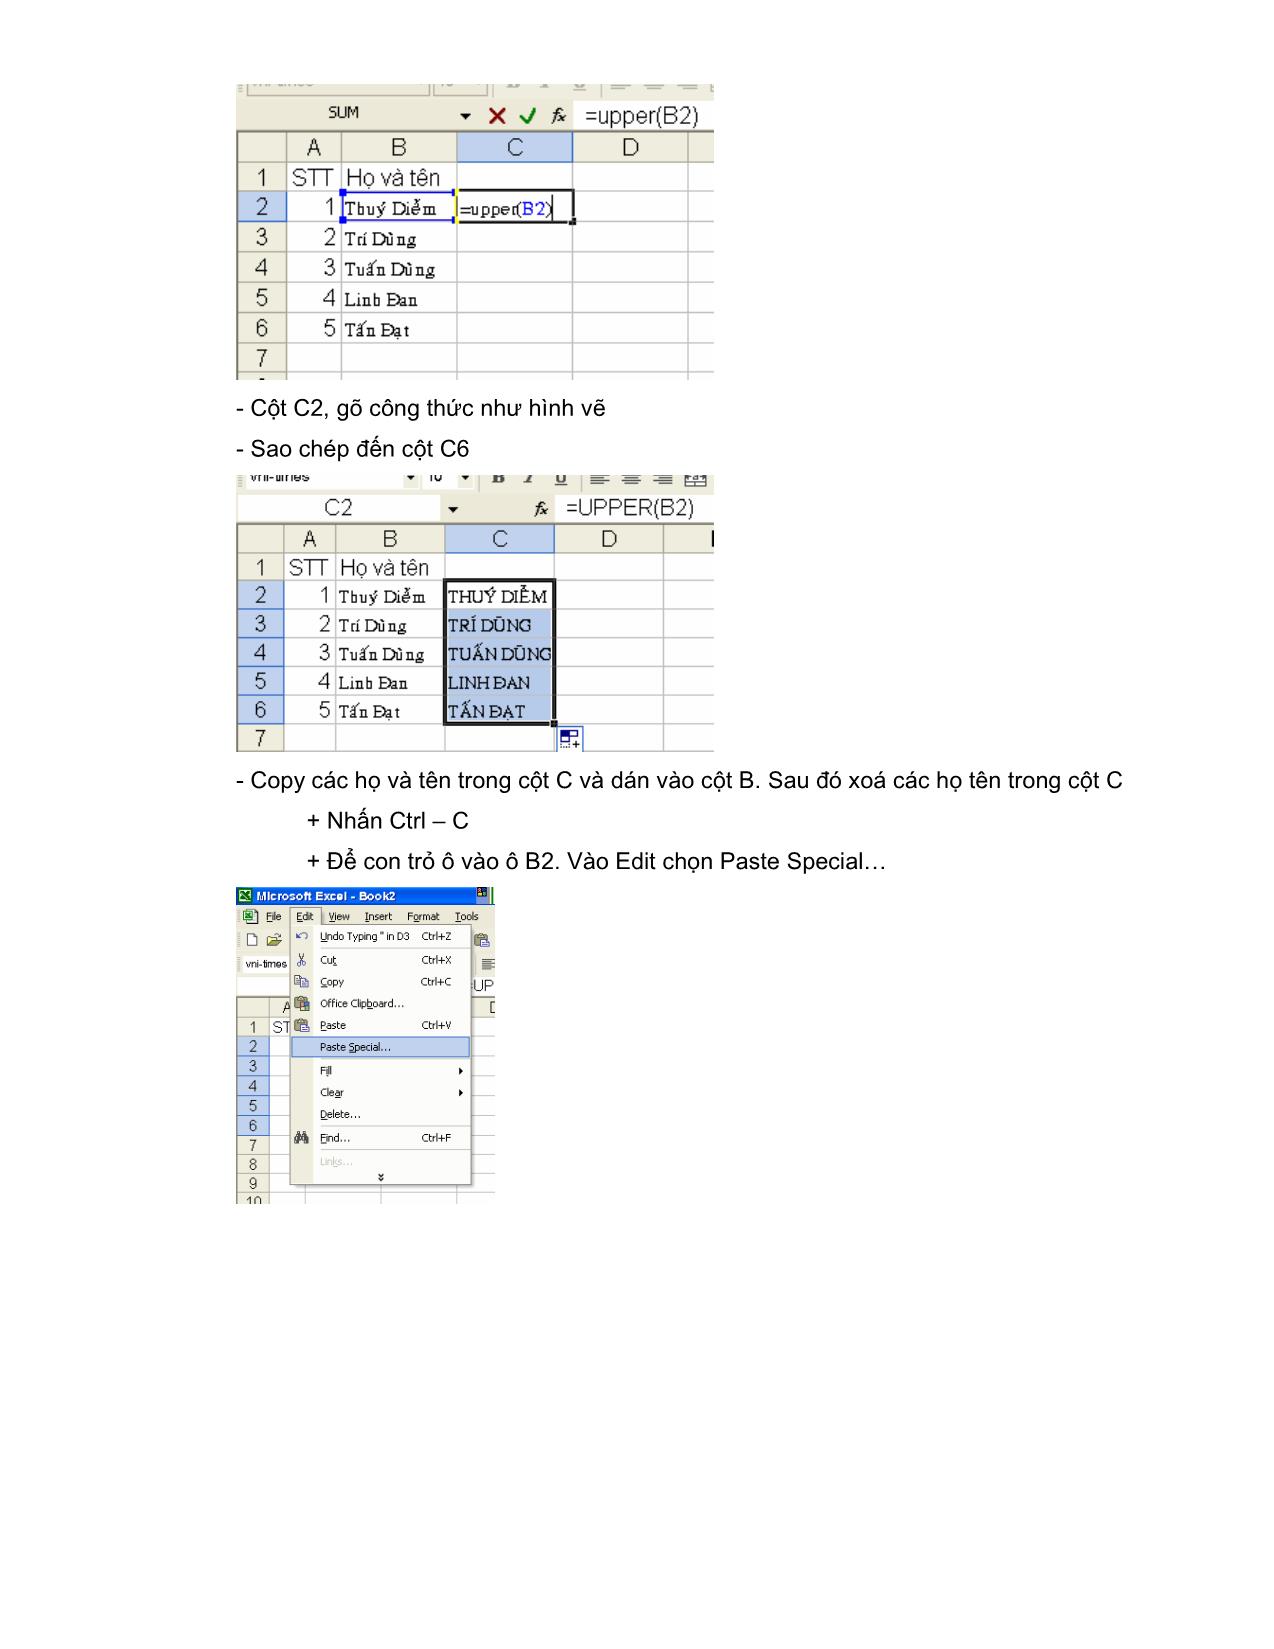 Kỹ năng công nghệ thông tin của giáo viên sử dụng một số hàm Excel cơ bản trang 5